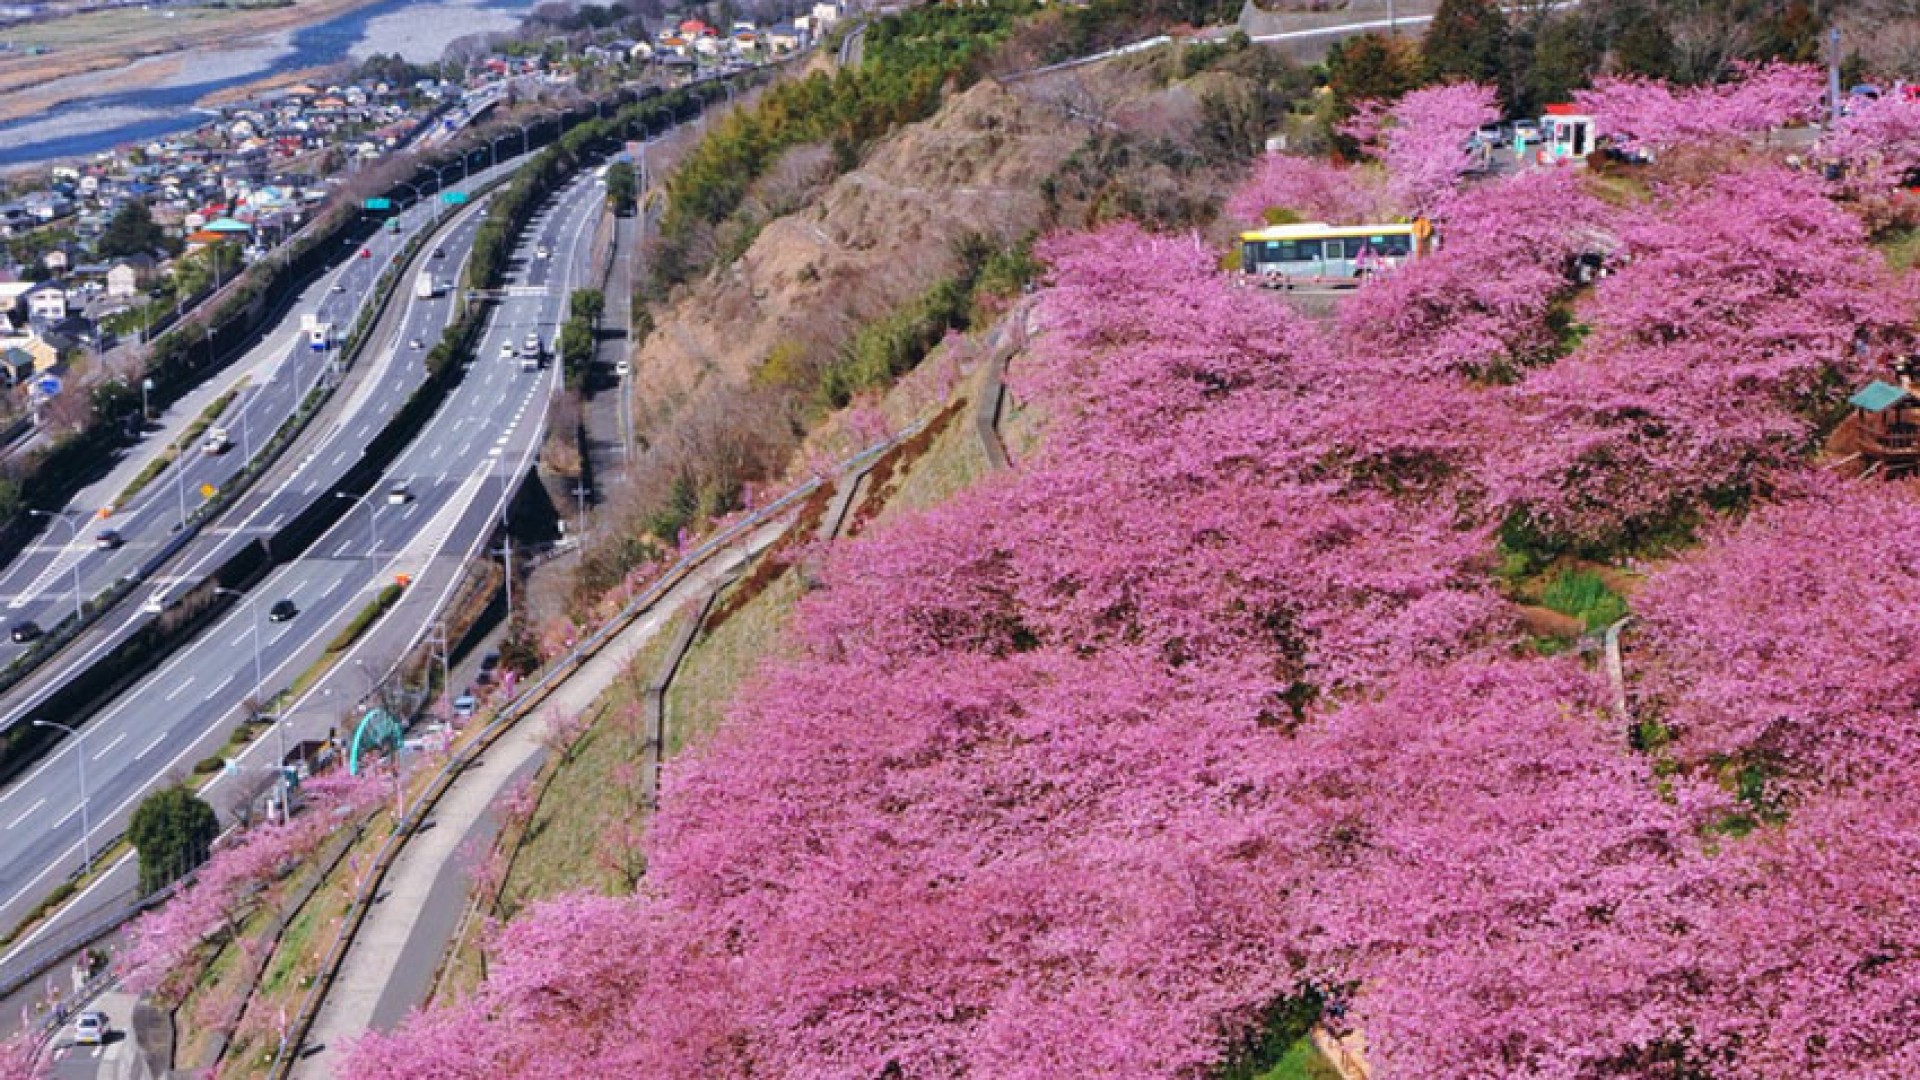 Matsuda Cherry Blossom Festival in Nishihirabatake Park